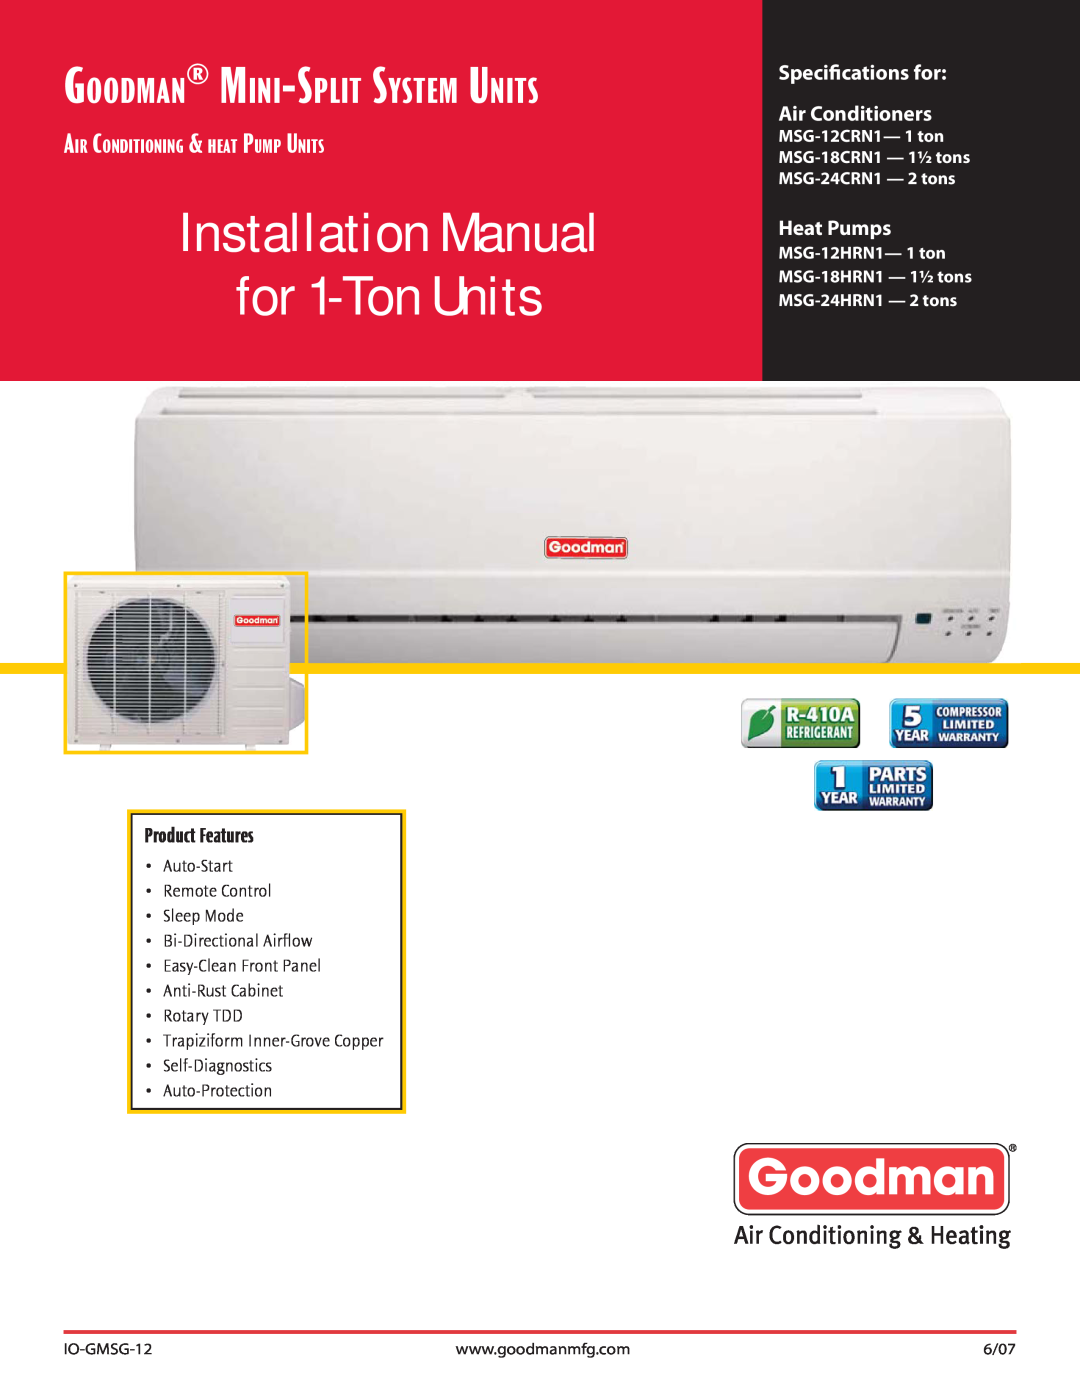 Goodman Mfg MSG-18HRN1, MSG-12HRN1 installation manual IO-GMSG-12, 6/07, Installation Manual for 1-TonUnits, Heat Pumps 